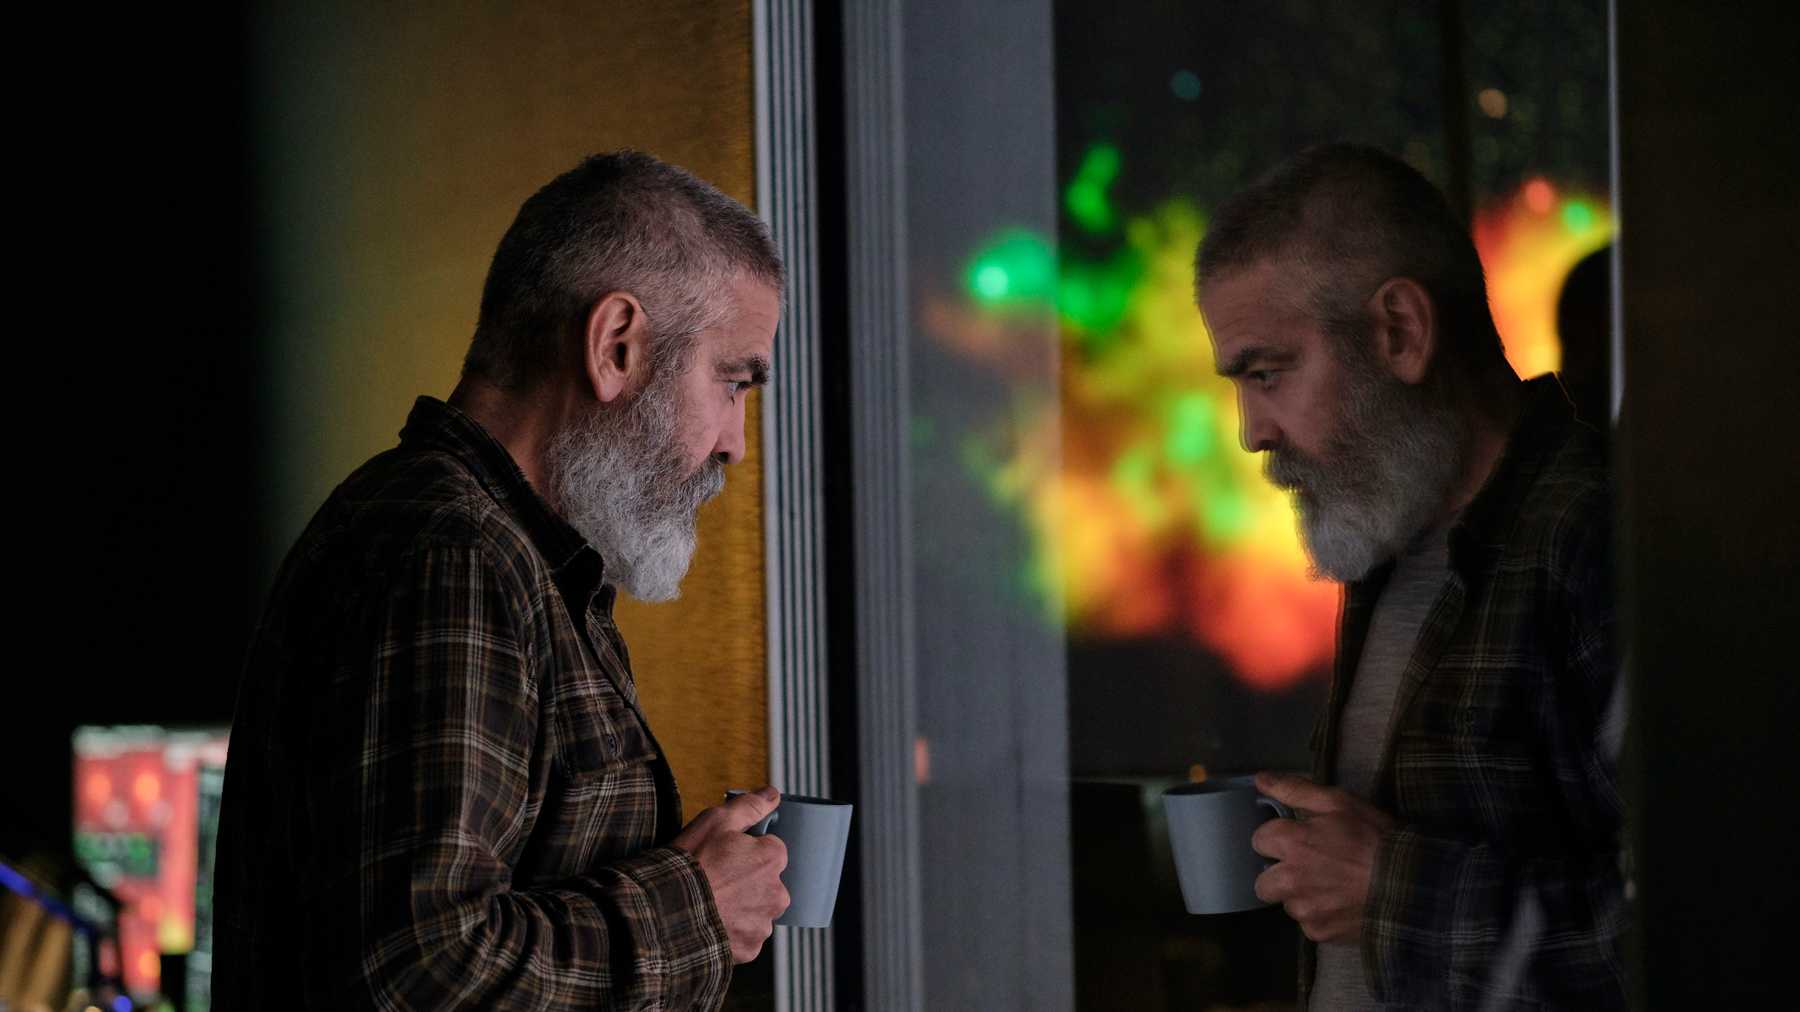 George Clooney mit Vollbart am Fenster mit einer Tasse in seiner hand. Er schaut nachdenklich in seinem neuen Film The Midnight Sky, der ab Dezember bei Netflix zu sehen ist.